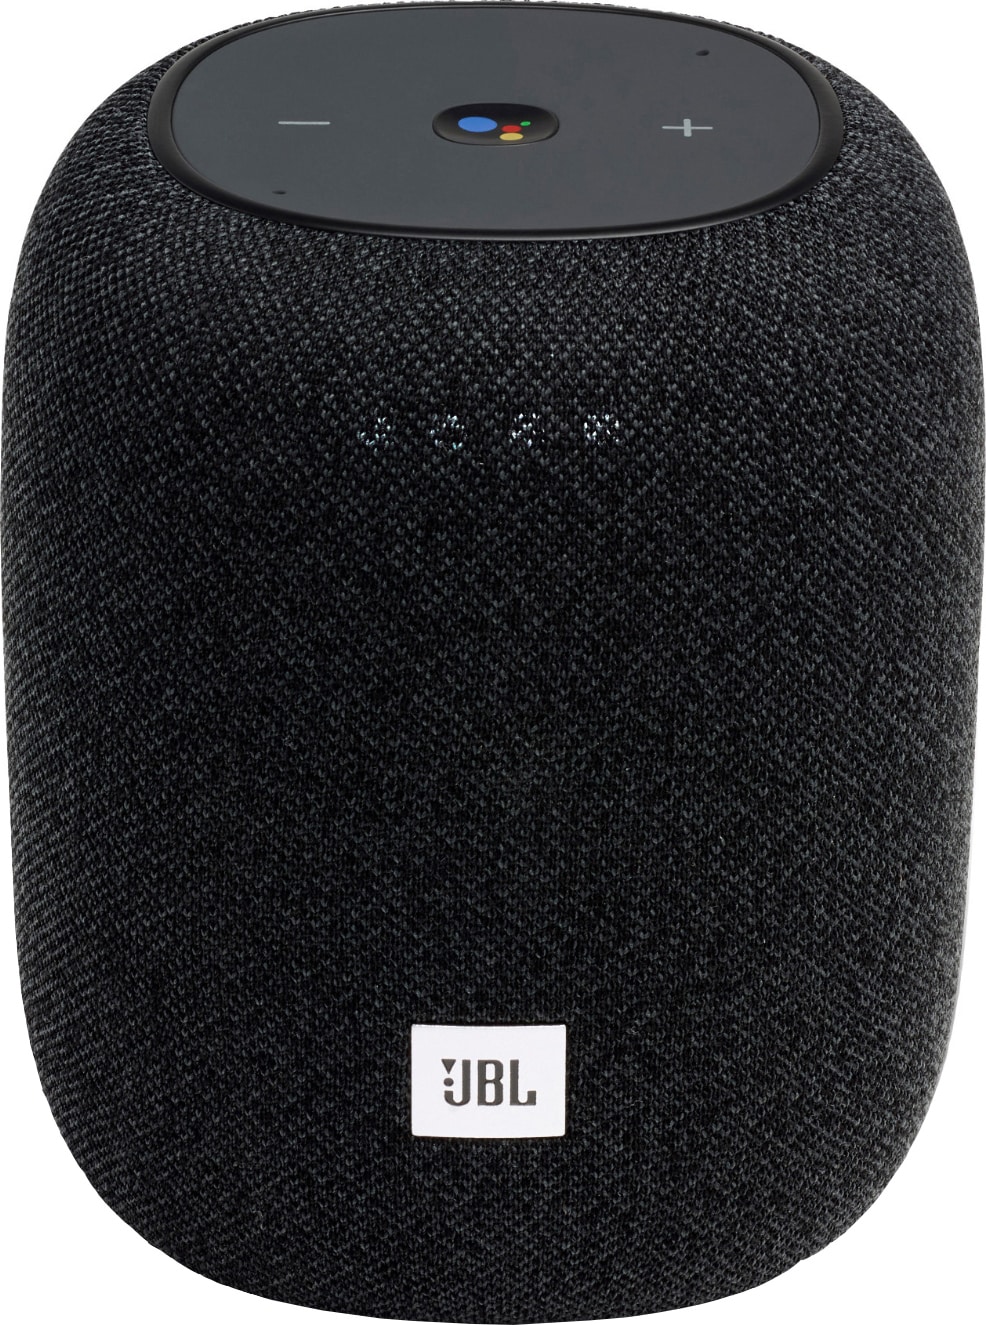 JBL Link Music trådløs høyttaler (sort) - Høyttalere - Elkjøp